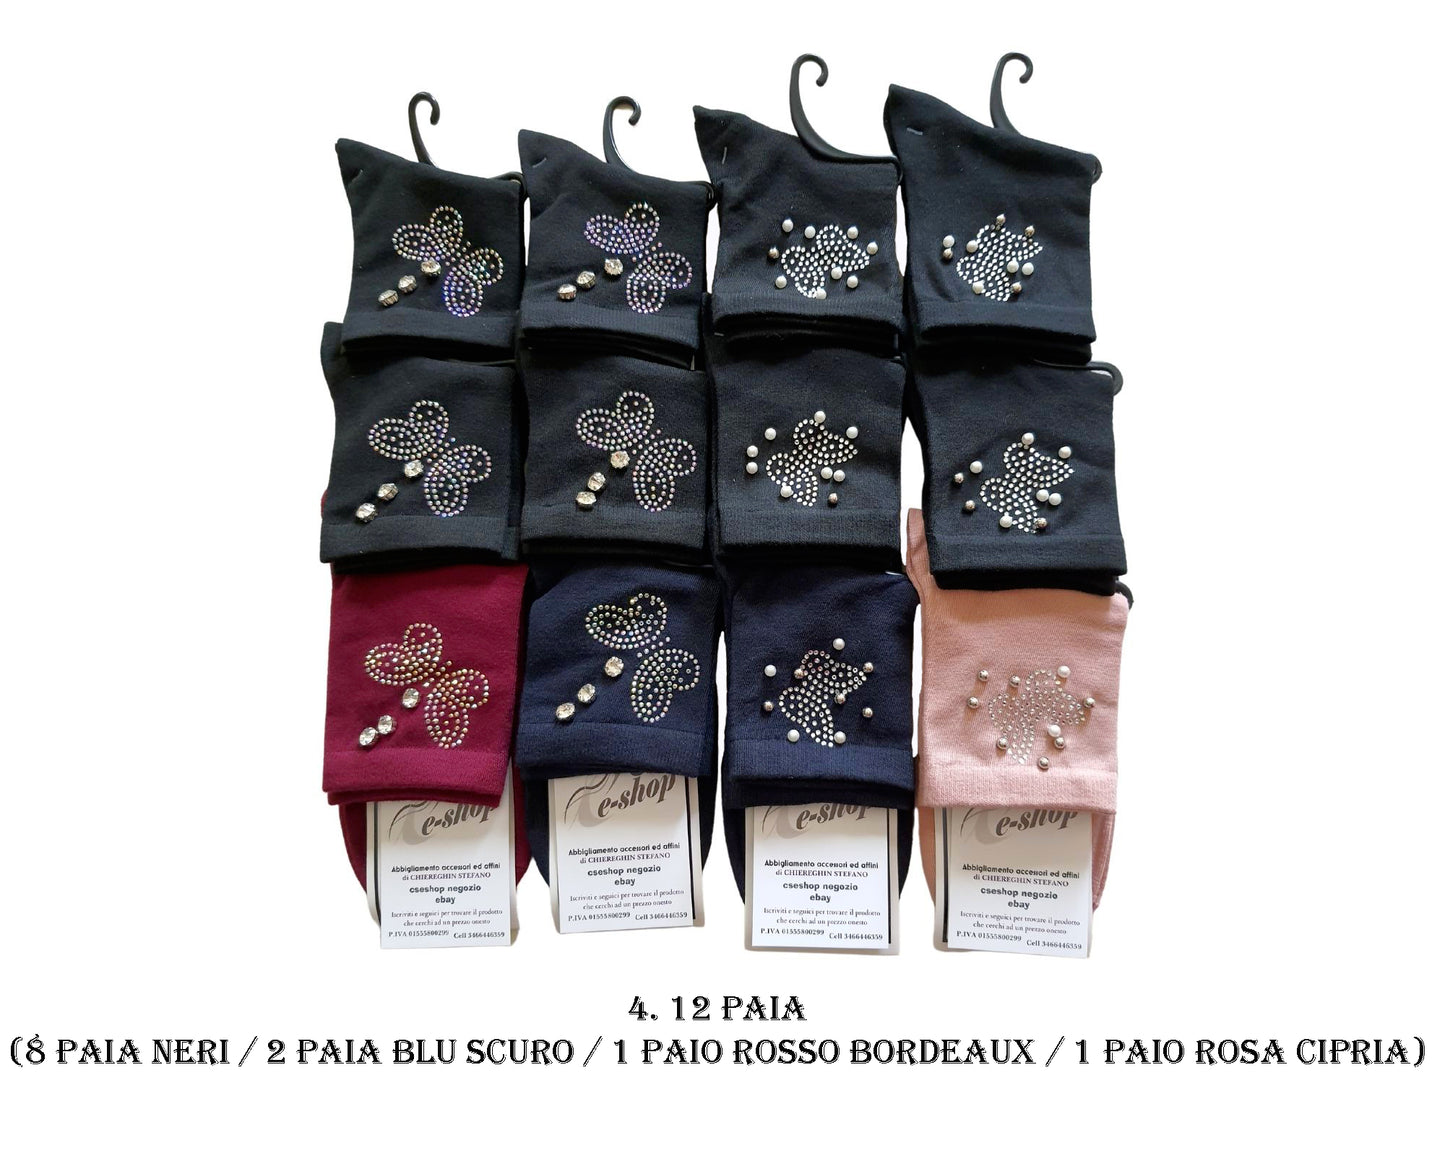 Calze Calzini Donna decorati Pietre Perle Colorati Cotone Farfalla